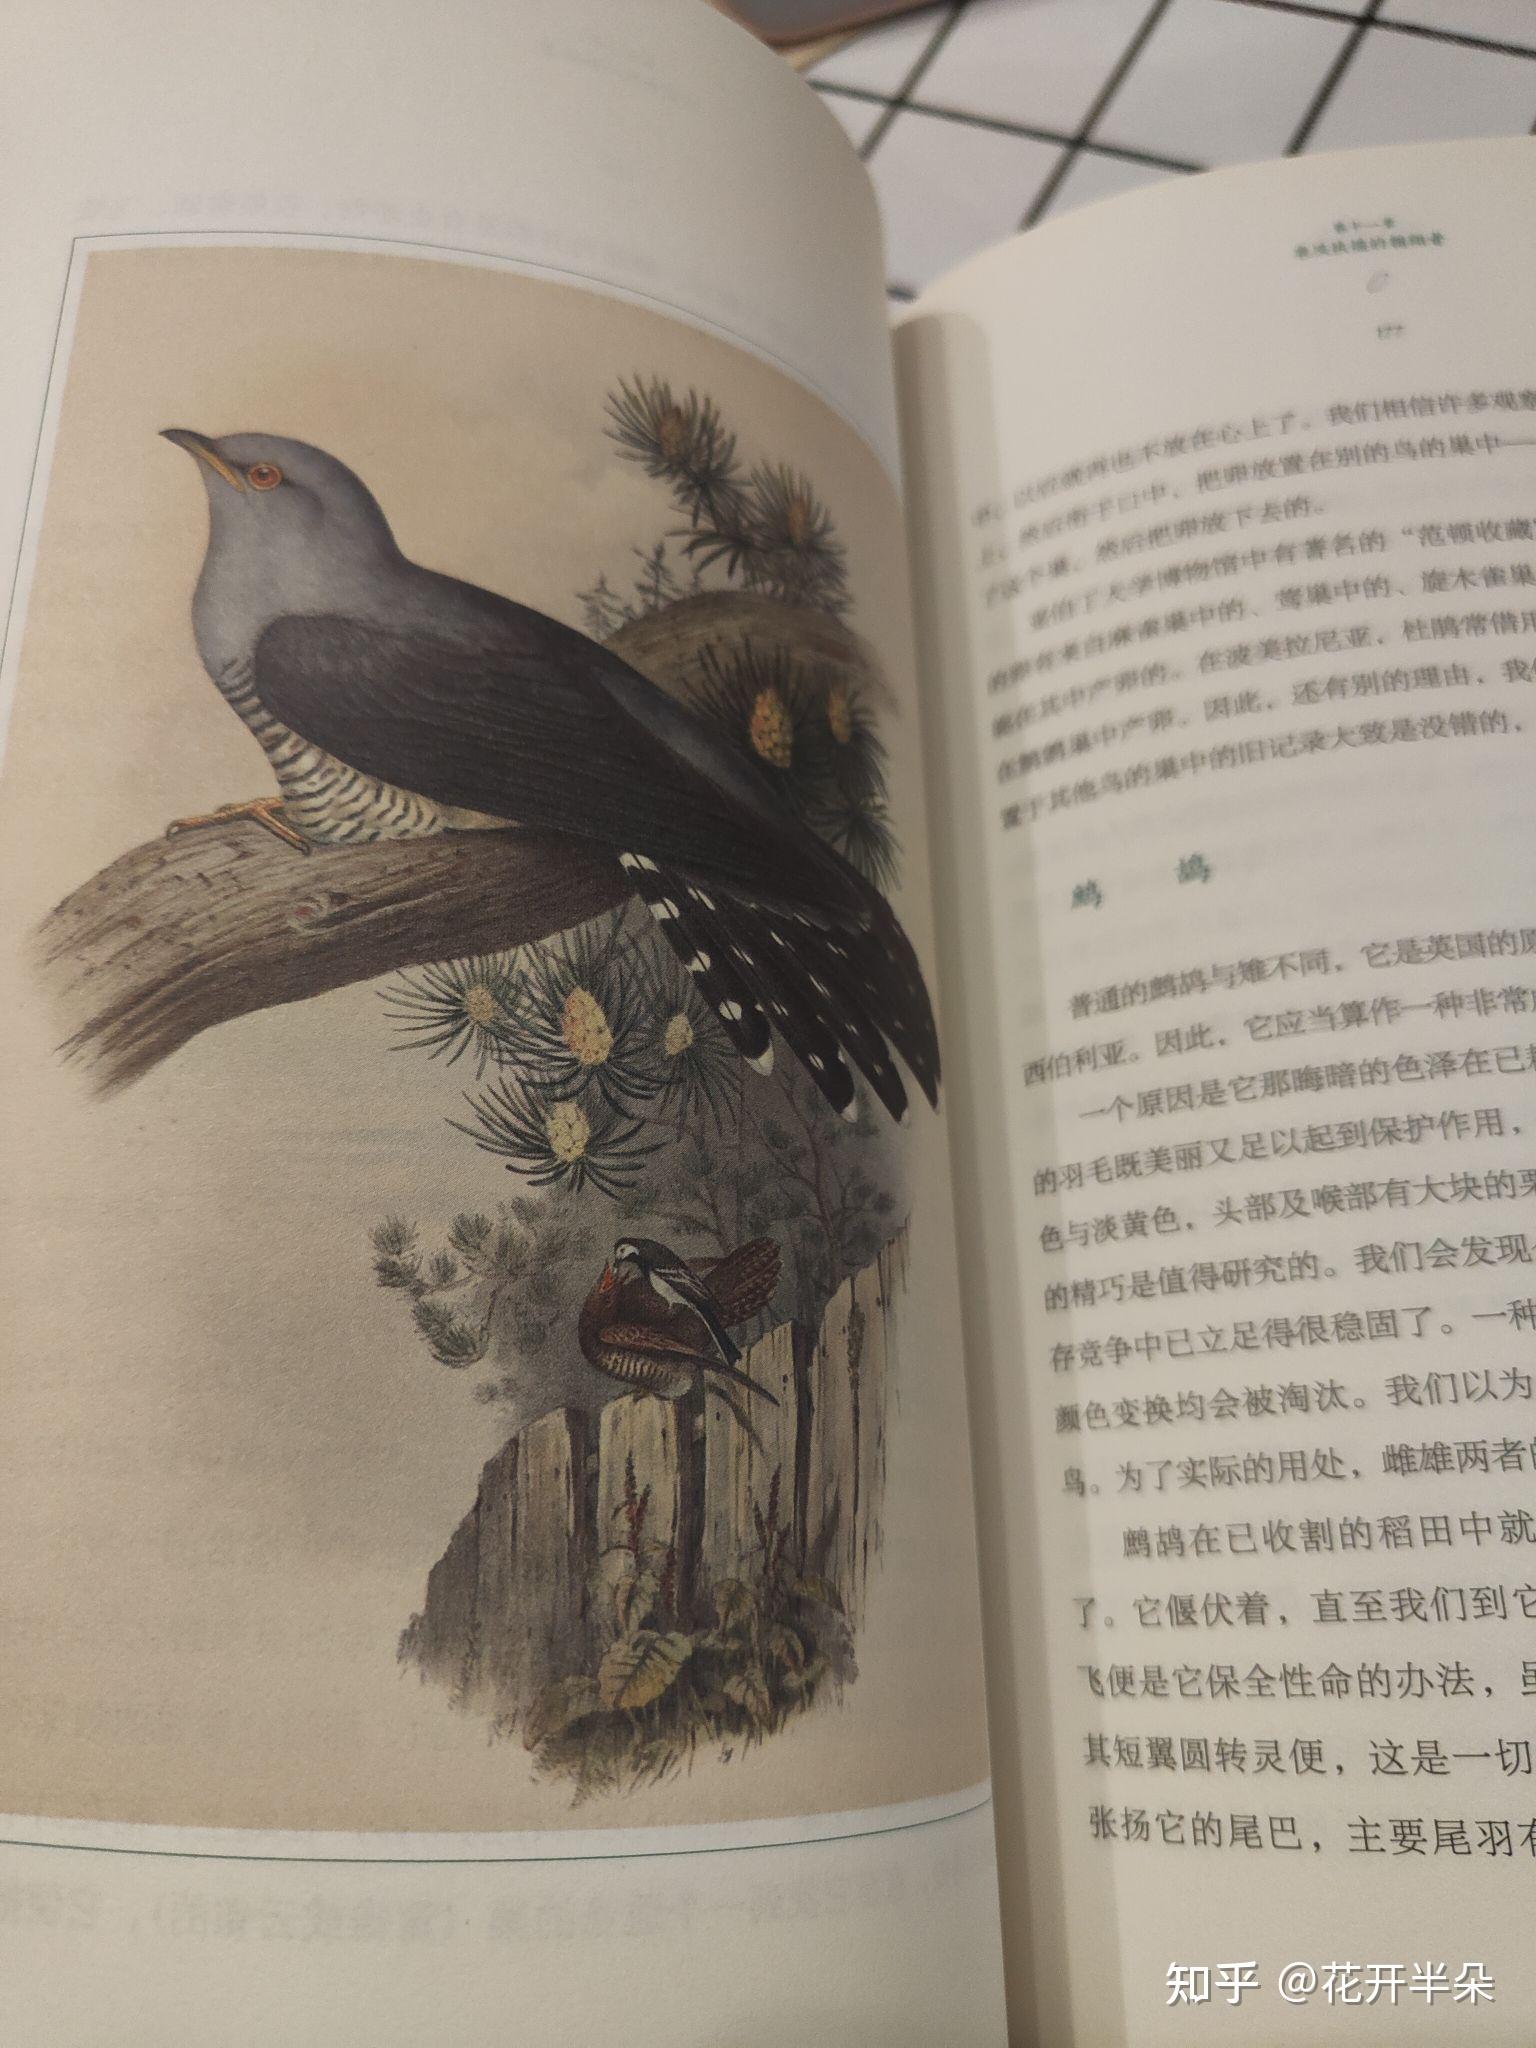 原始鸟类研究揭示鸟类肩带骨骼的发育可塑性----中国科学院古脊椎动物与古人类研究所